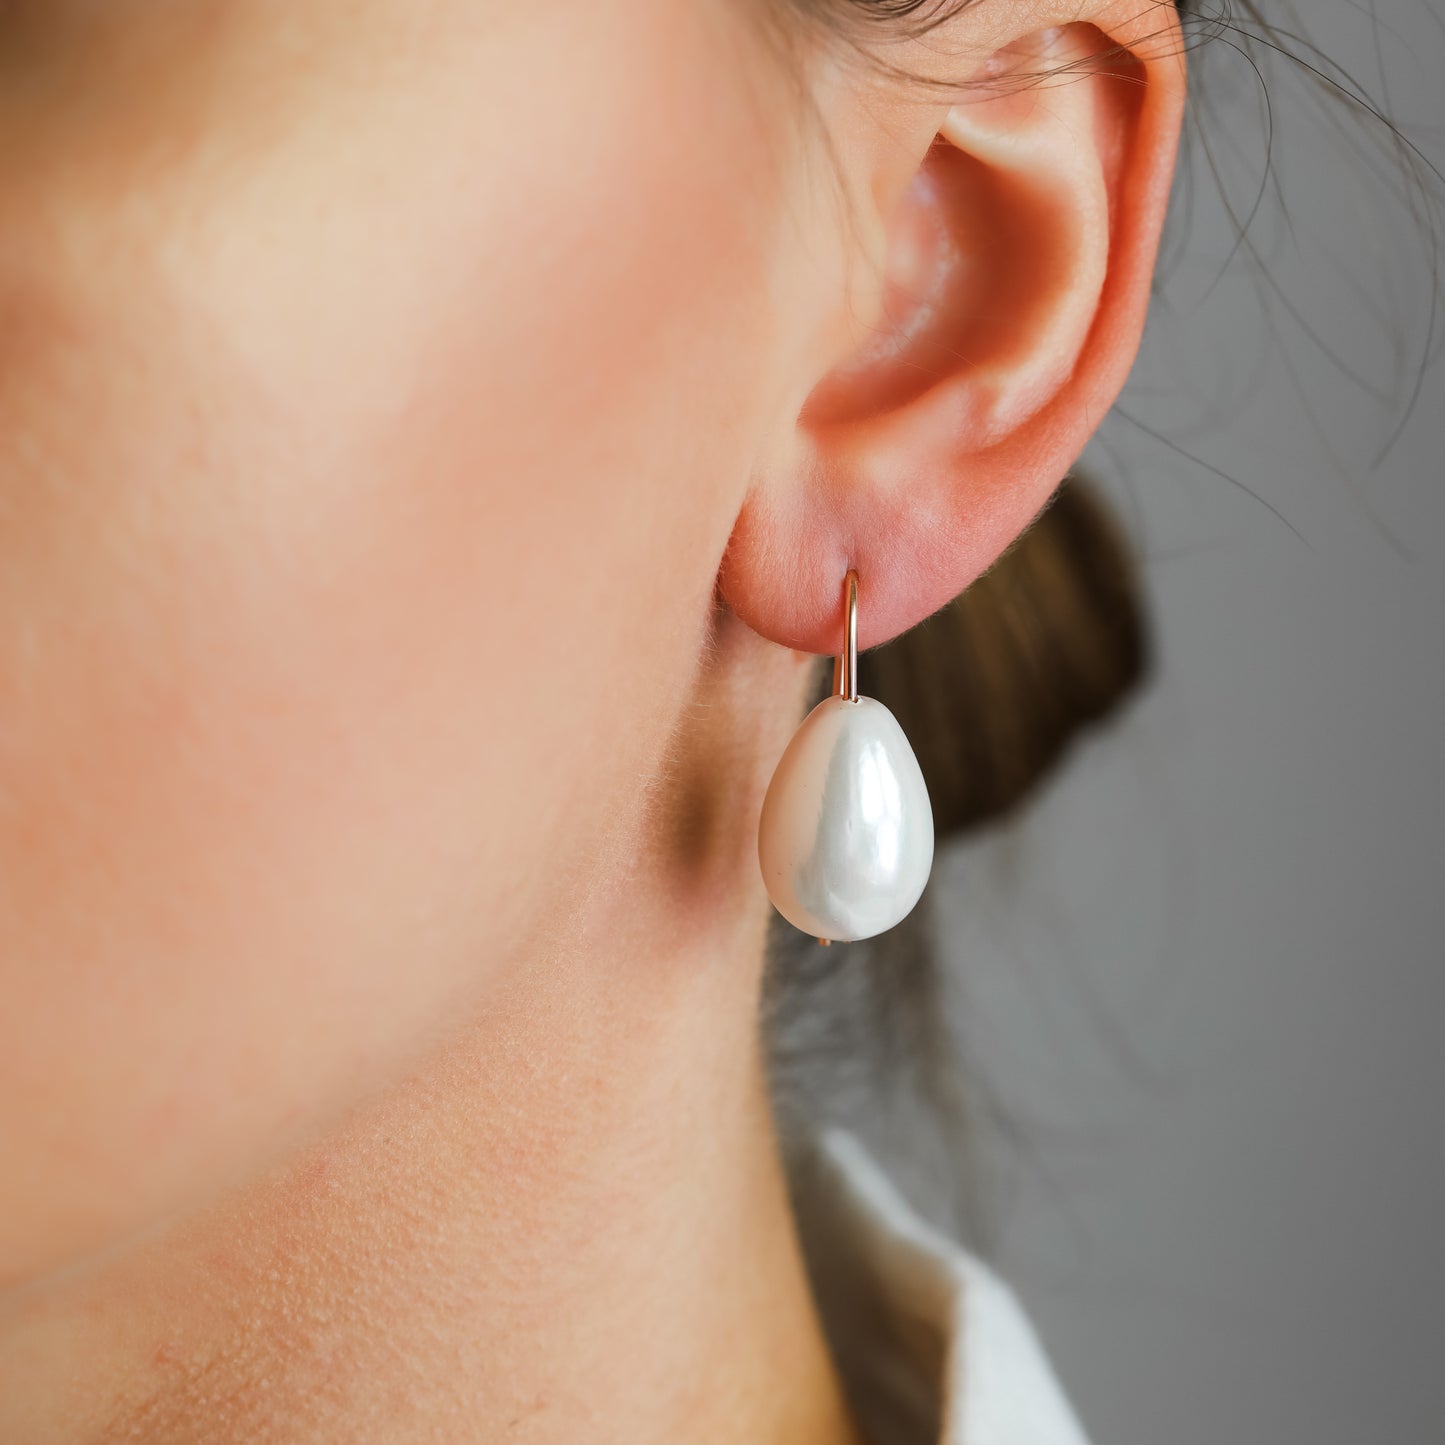 Ceramic Pearl Earrings • Drop Pearl Earrings • Gold Filled • Fashion Everyday Jewellery • Teardrop Dangle Earrings • BYSDMJEWELS